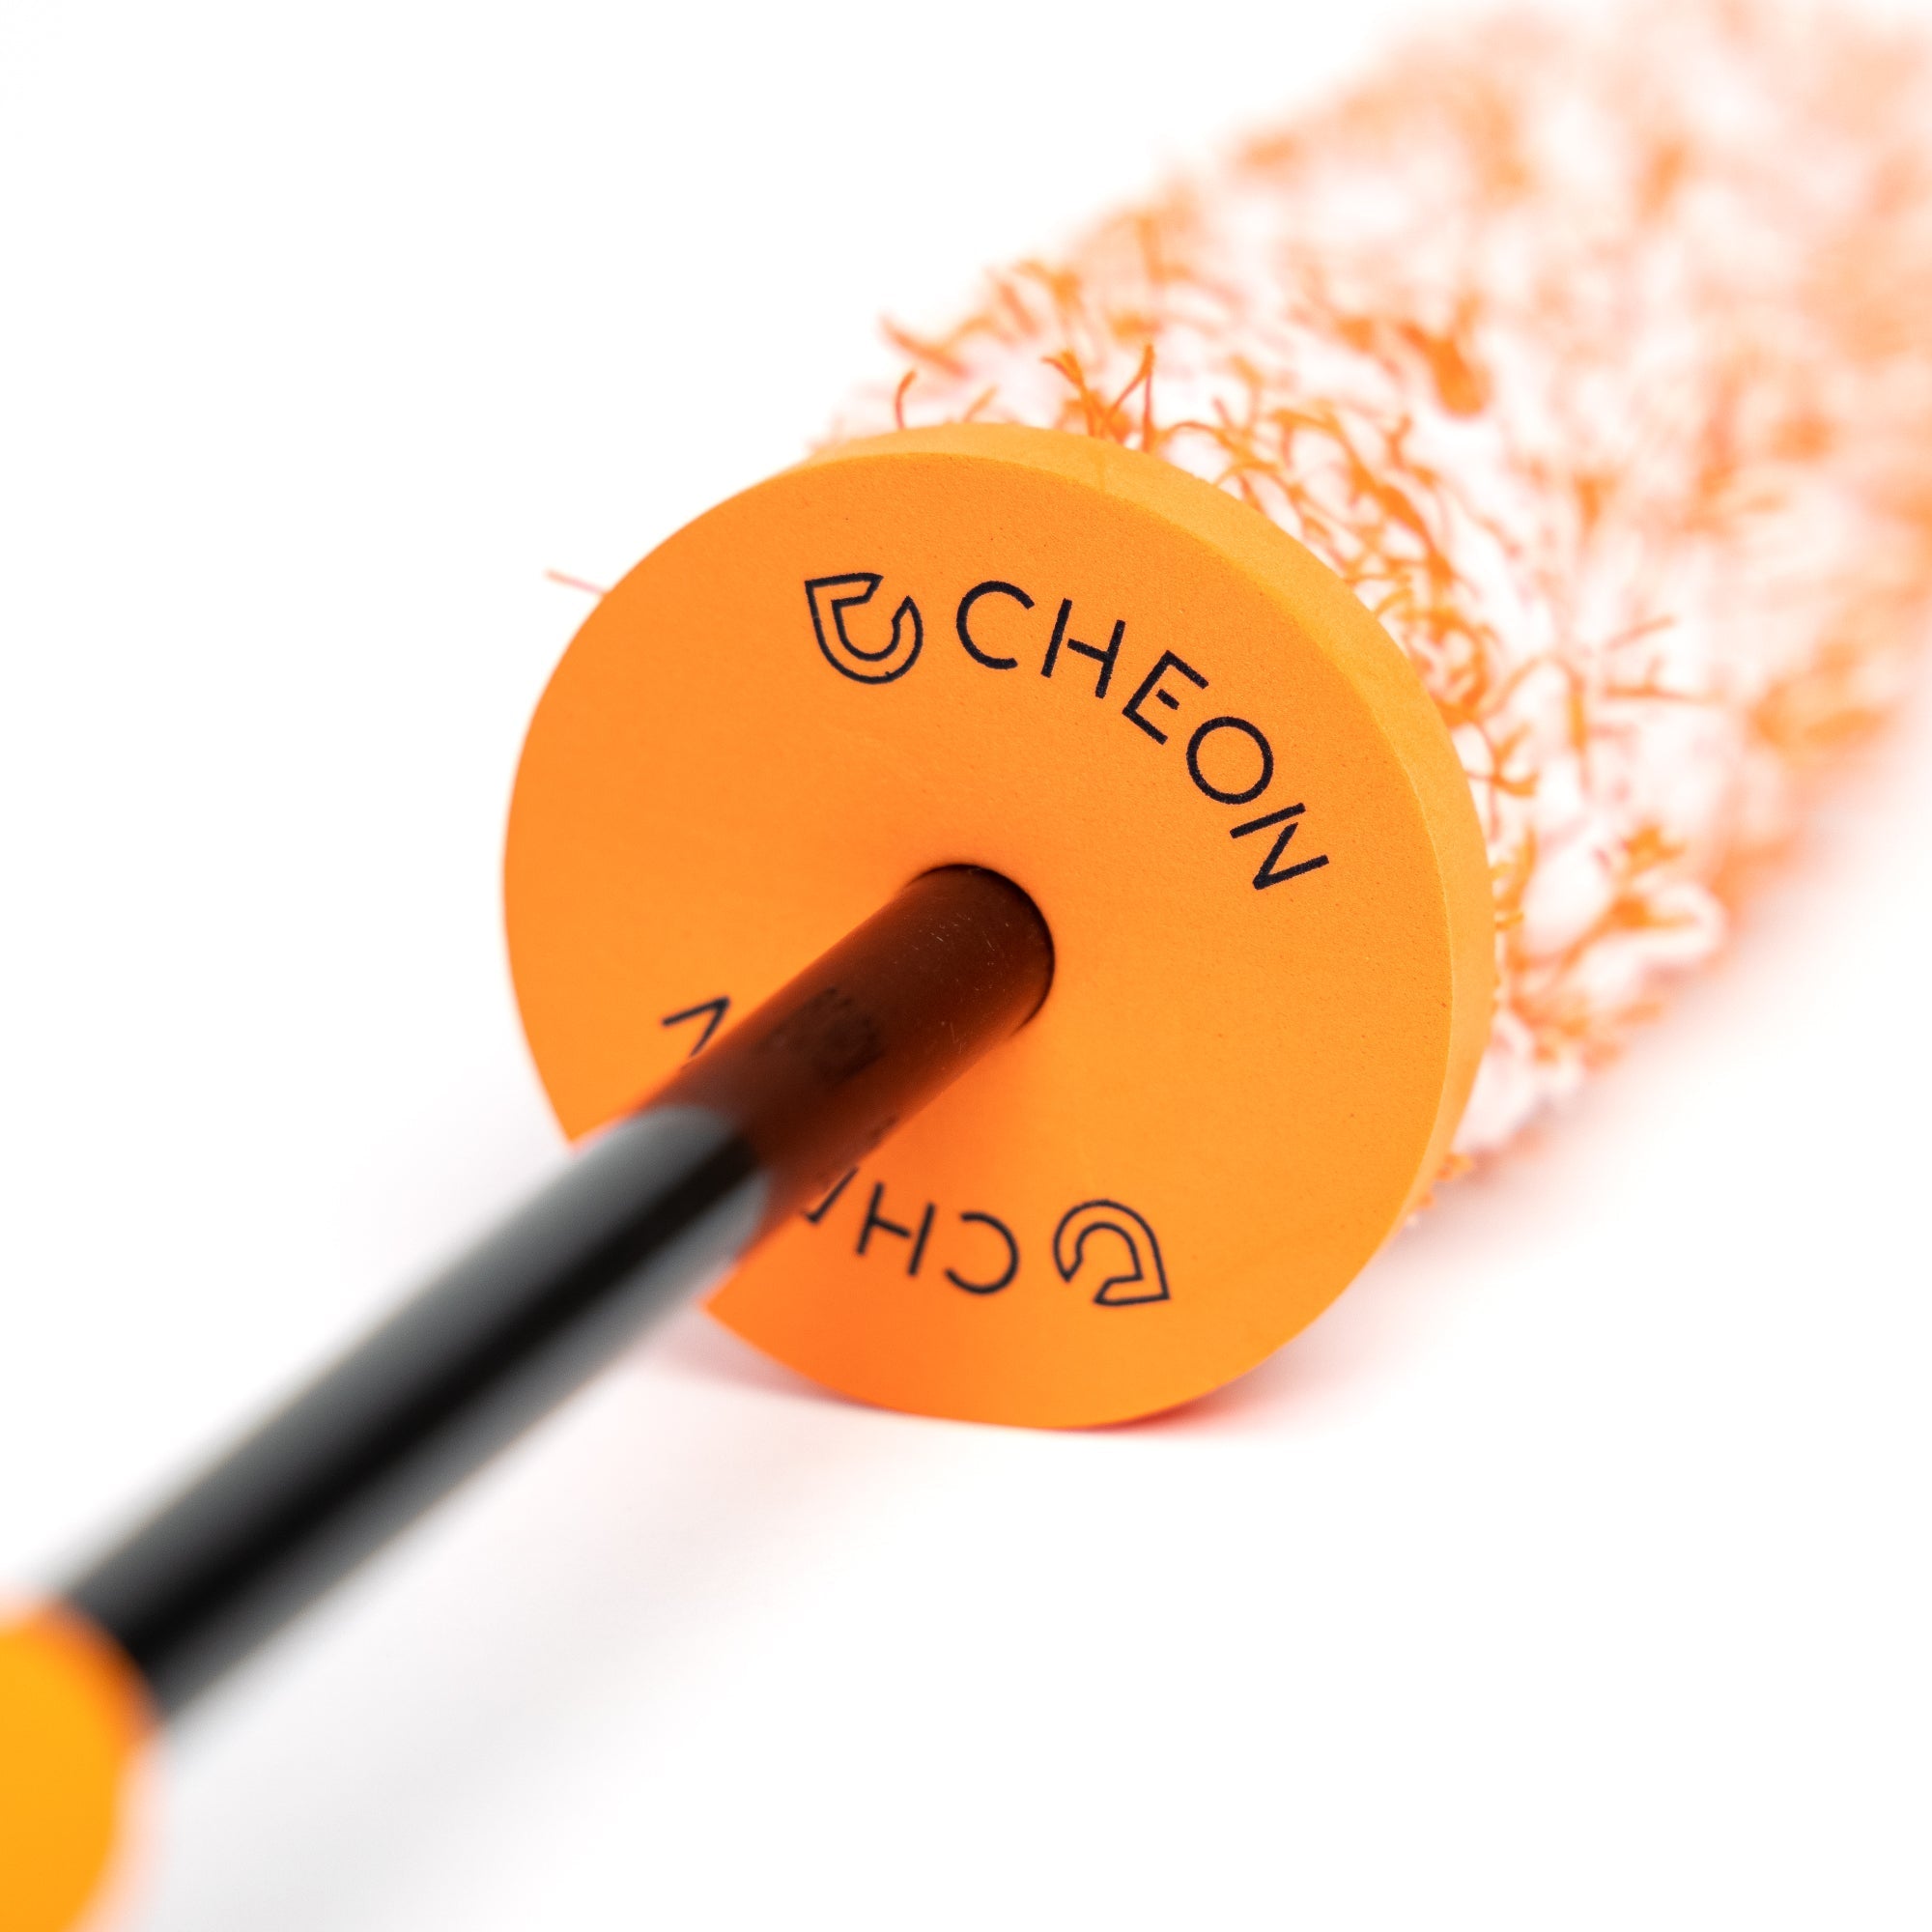 Cheon Wheel Brush